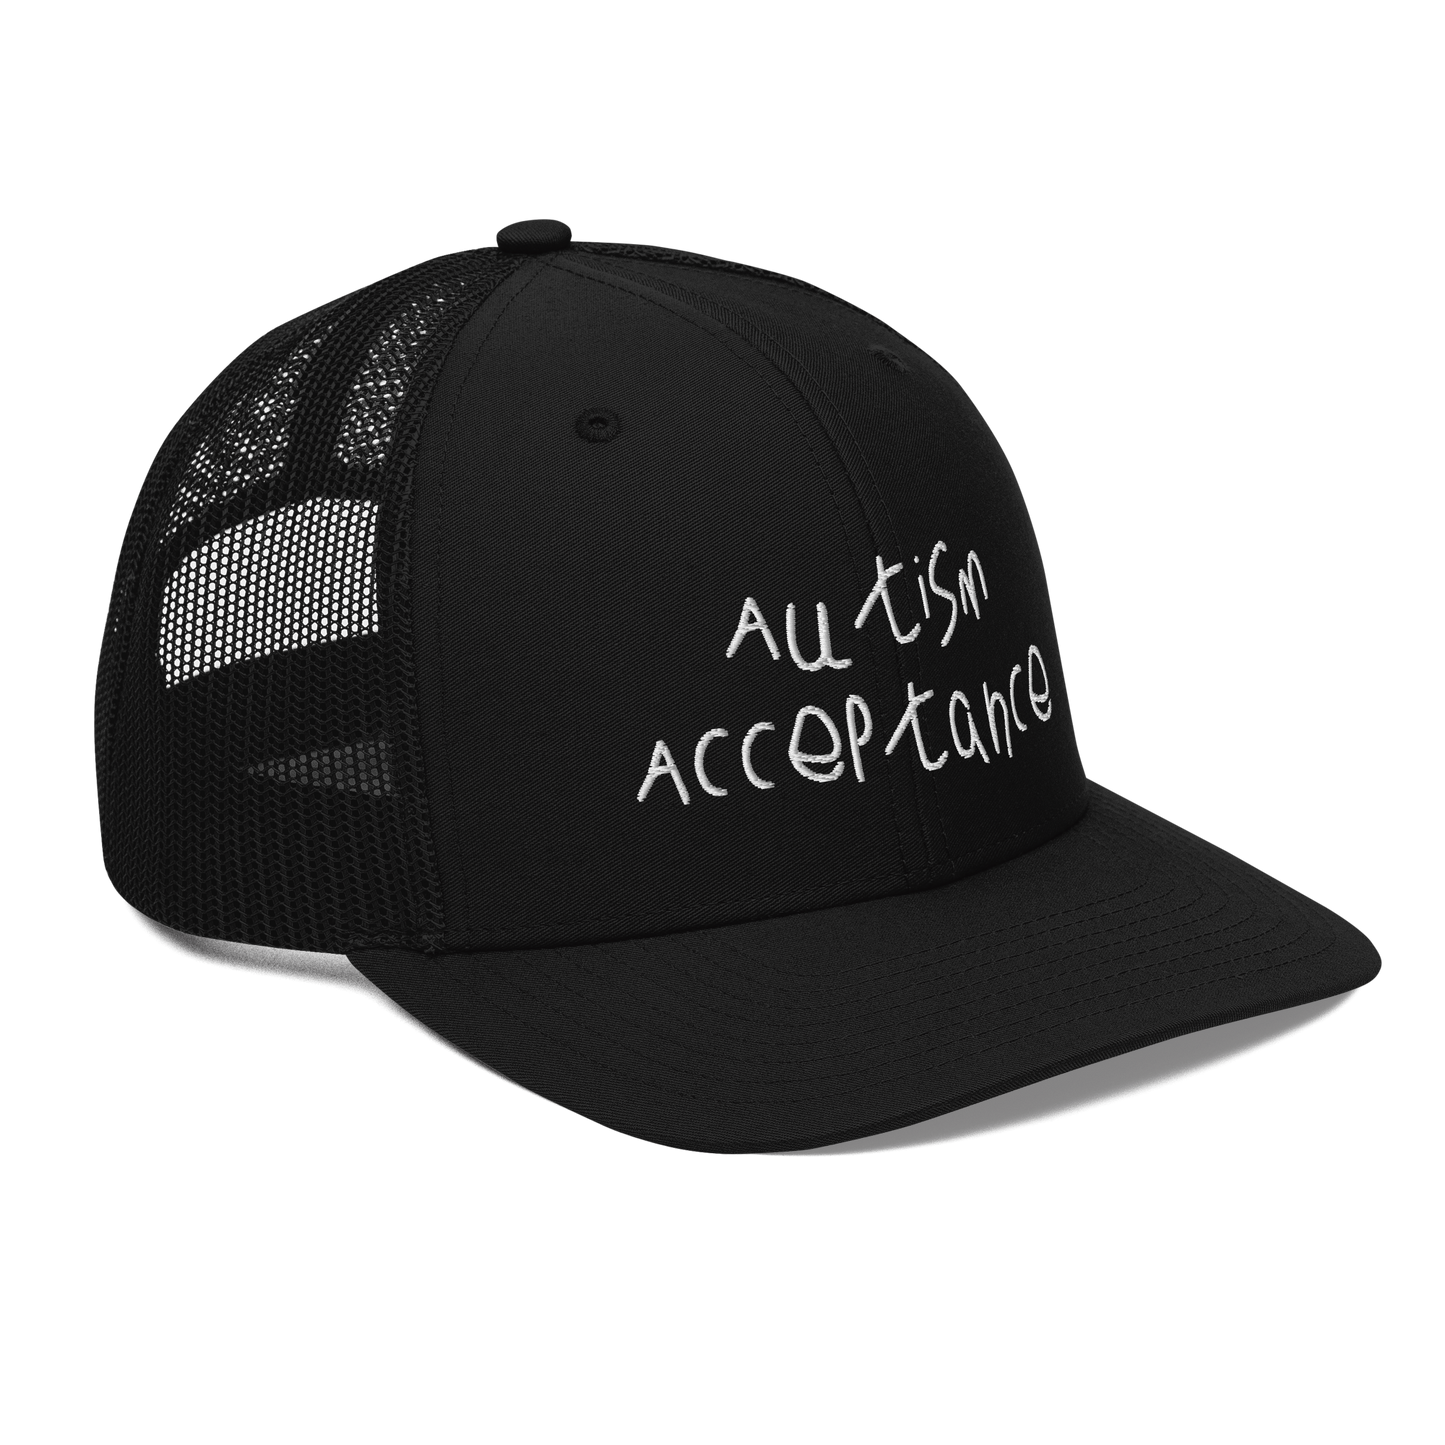 Autism Acceptance Trucker Cap (Black)